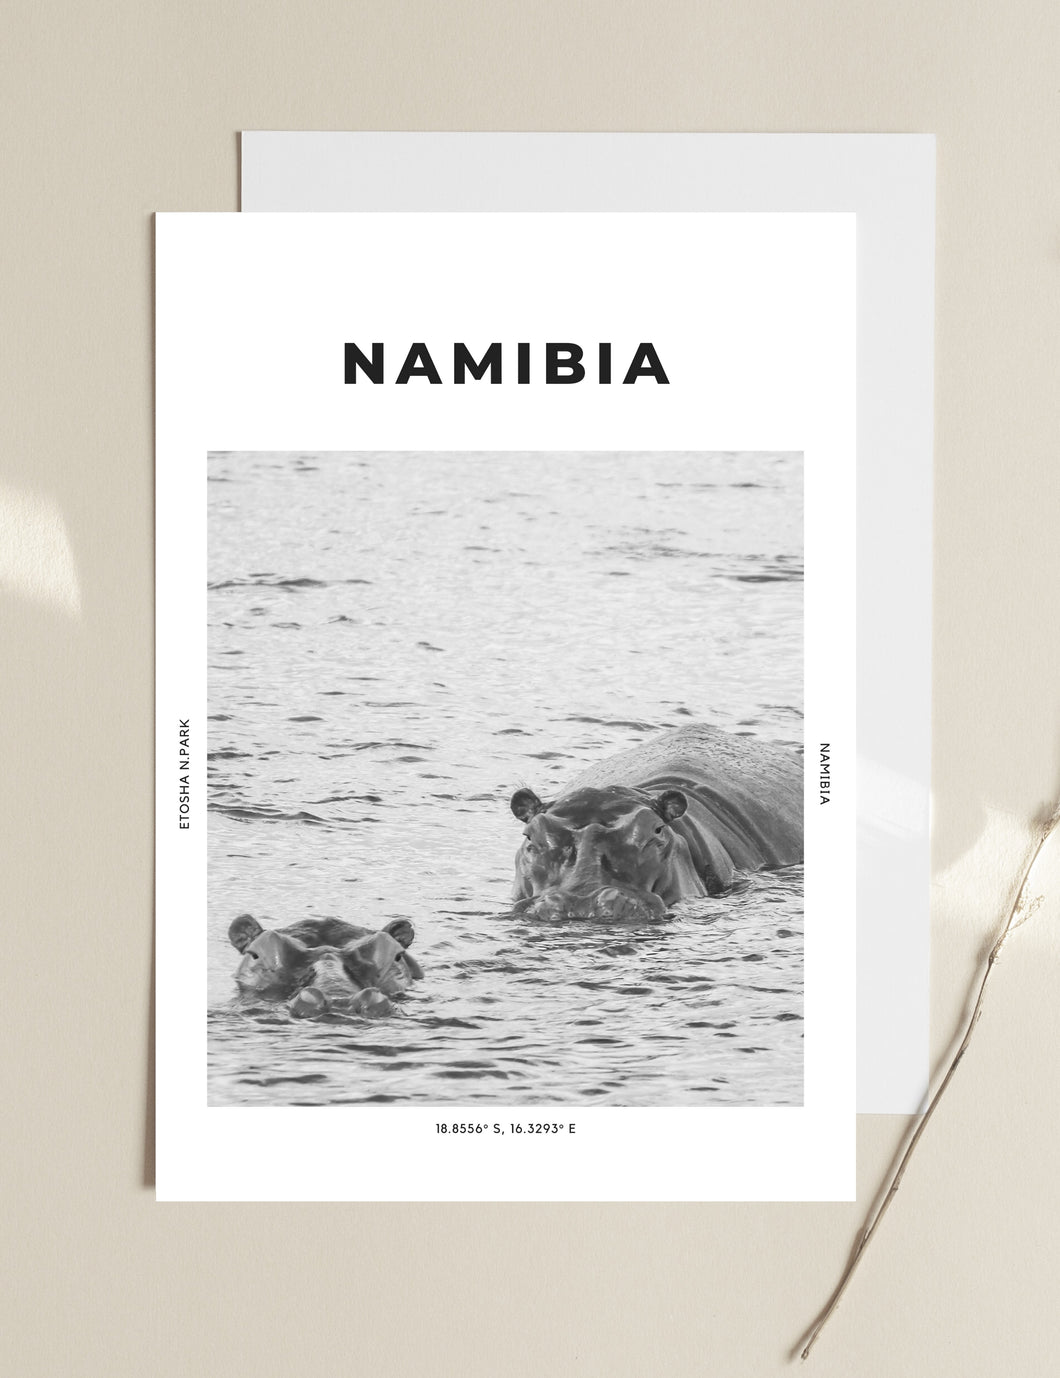 Namibia 'Horatio And Gloria' Print